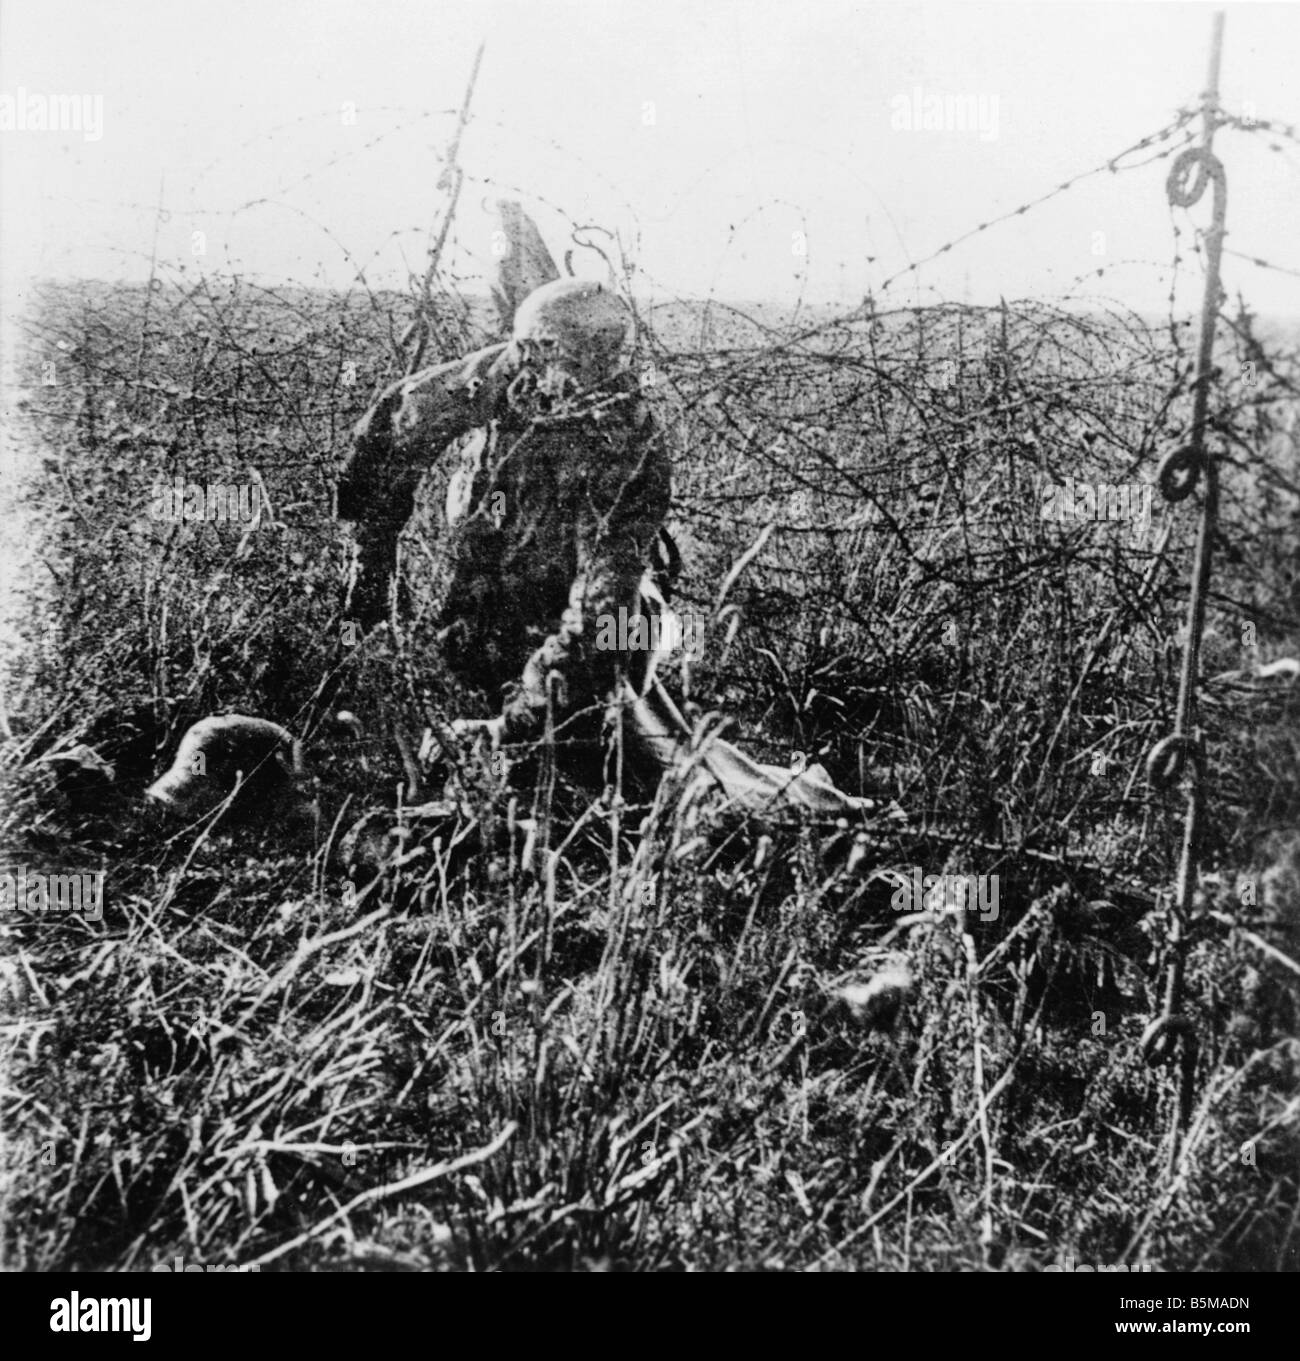 2 G55 W1 1917 3 Körper eines deutschen Soldaten Foto 1917 Geschichte WWI Western Front Körper eines deutschen Soldaten im Stacheldraht Foto keine d Stockfoto